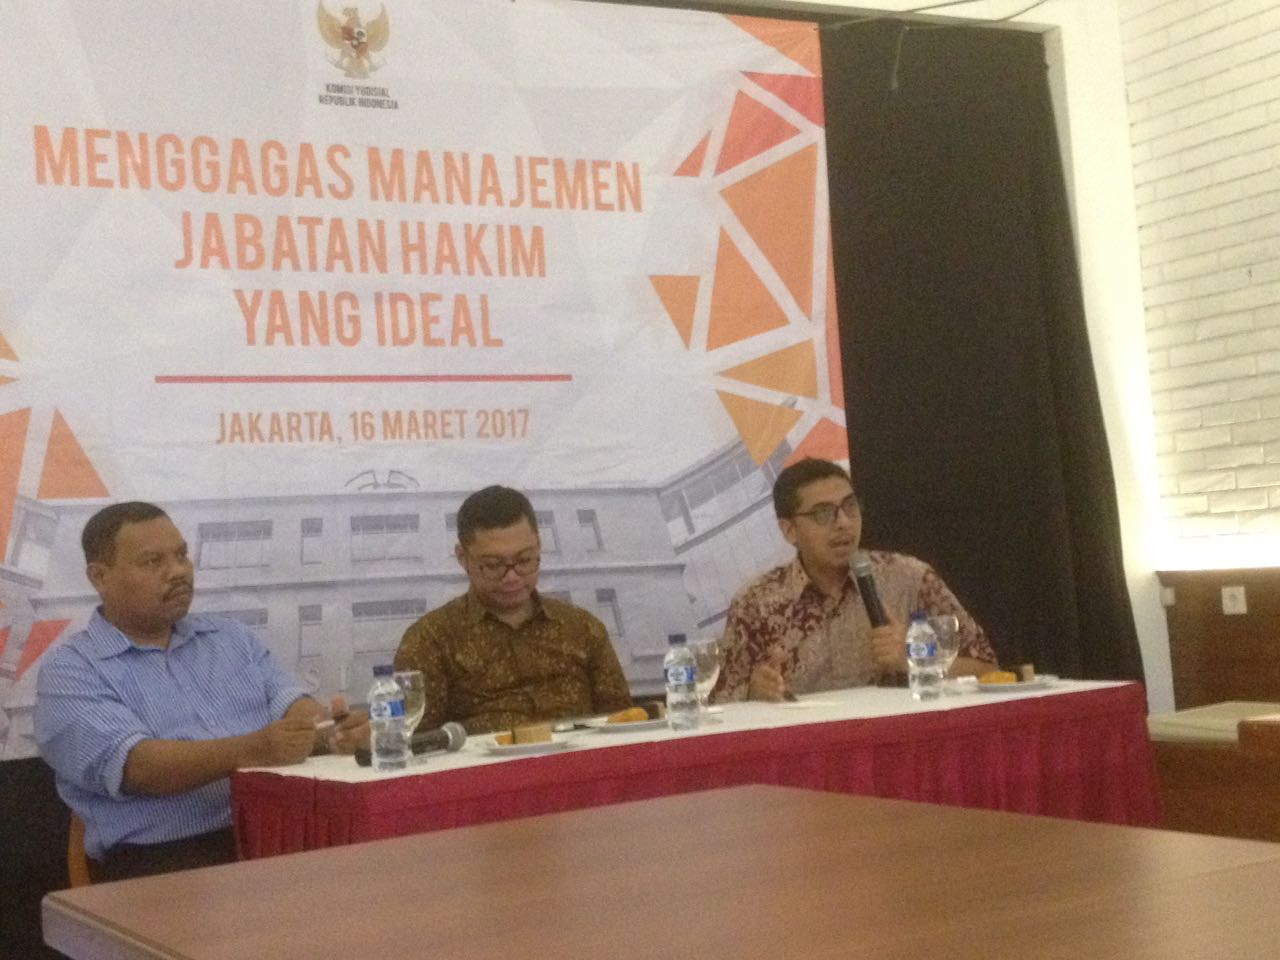 Diskusi yang Digelar Komisi Yudisial bertajuk â€œMenggagas Manajemen Jabatan Hakim yang Idealâ€ di Jakarta, Kamis (16/03). Foto: CR-23